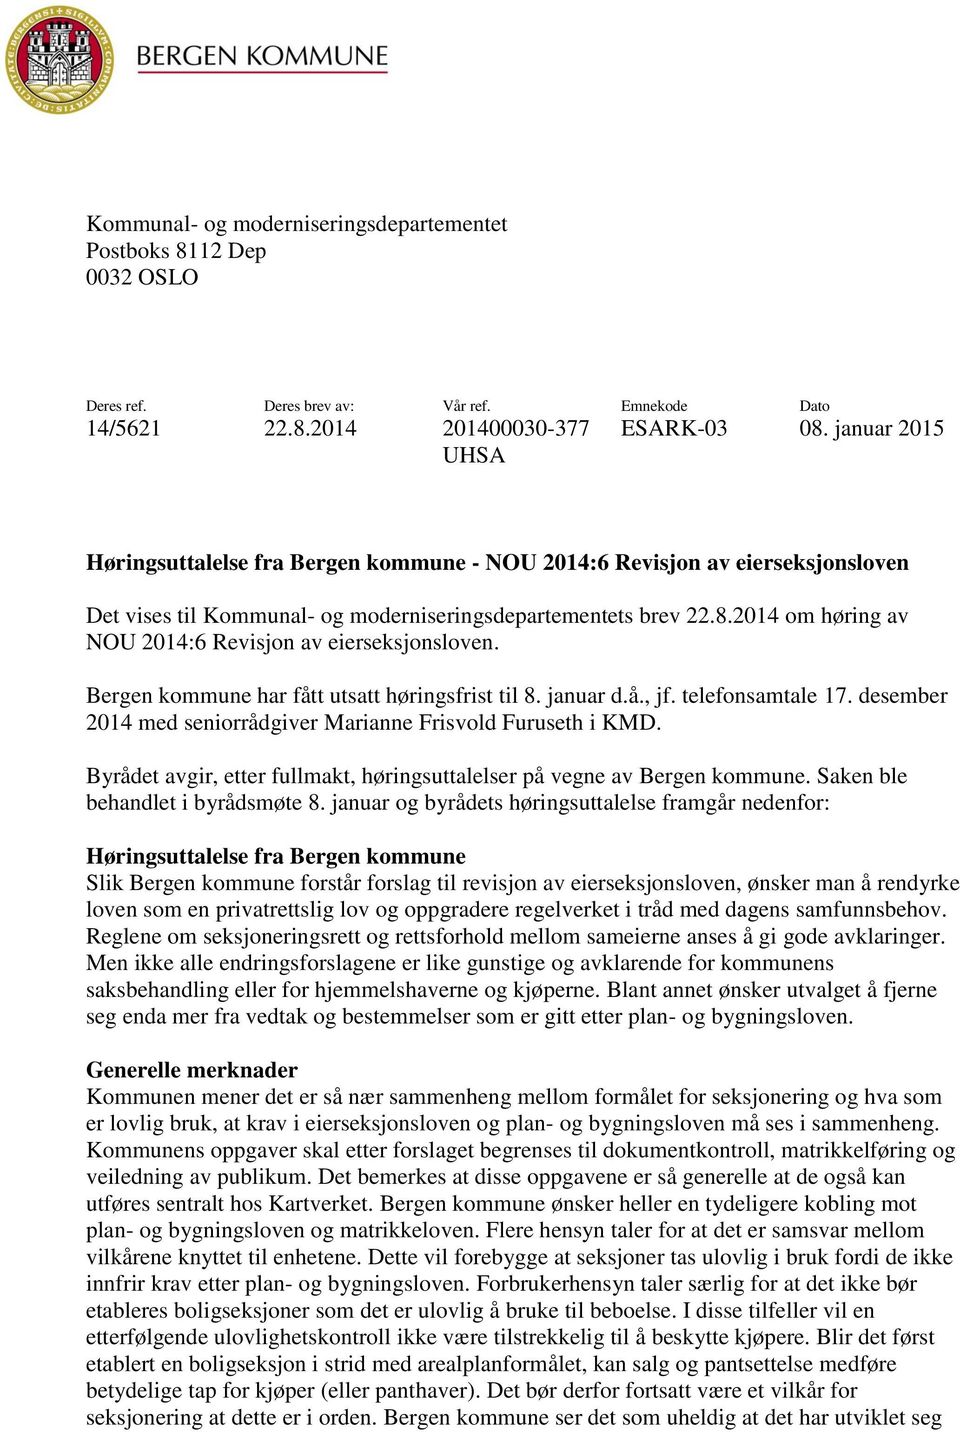 2014 om høring av NOU 2014:6 Revisjon av eierseksjonsloven. Bergen kommune har fått utsatt høringsfrist til 8. januar d.å., jf. telefonsamtale 17.